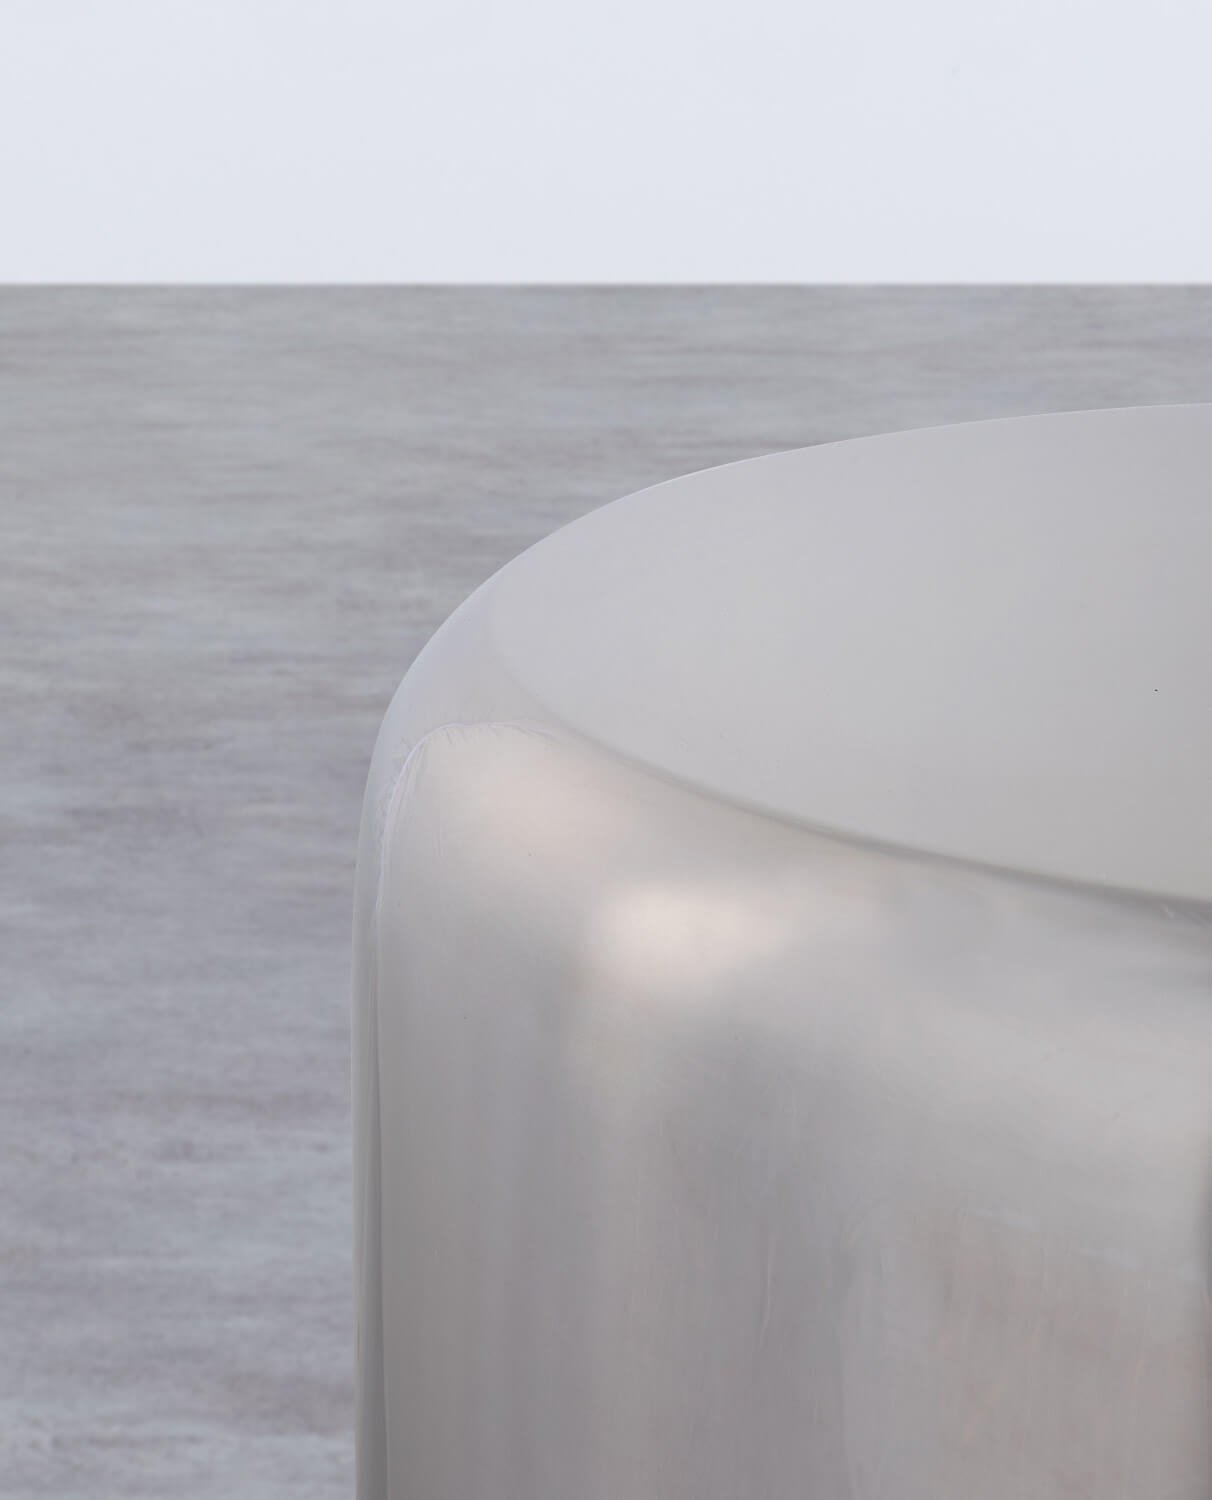 Tavolino Asuiliario Rotondo in Metallo (Ø50 cm) Onso, immagine della galleria 2